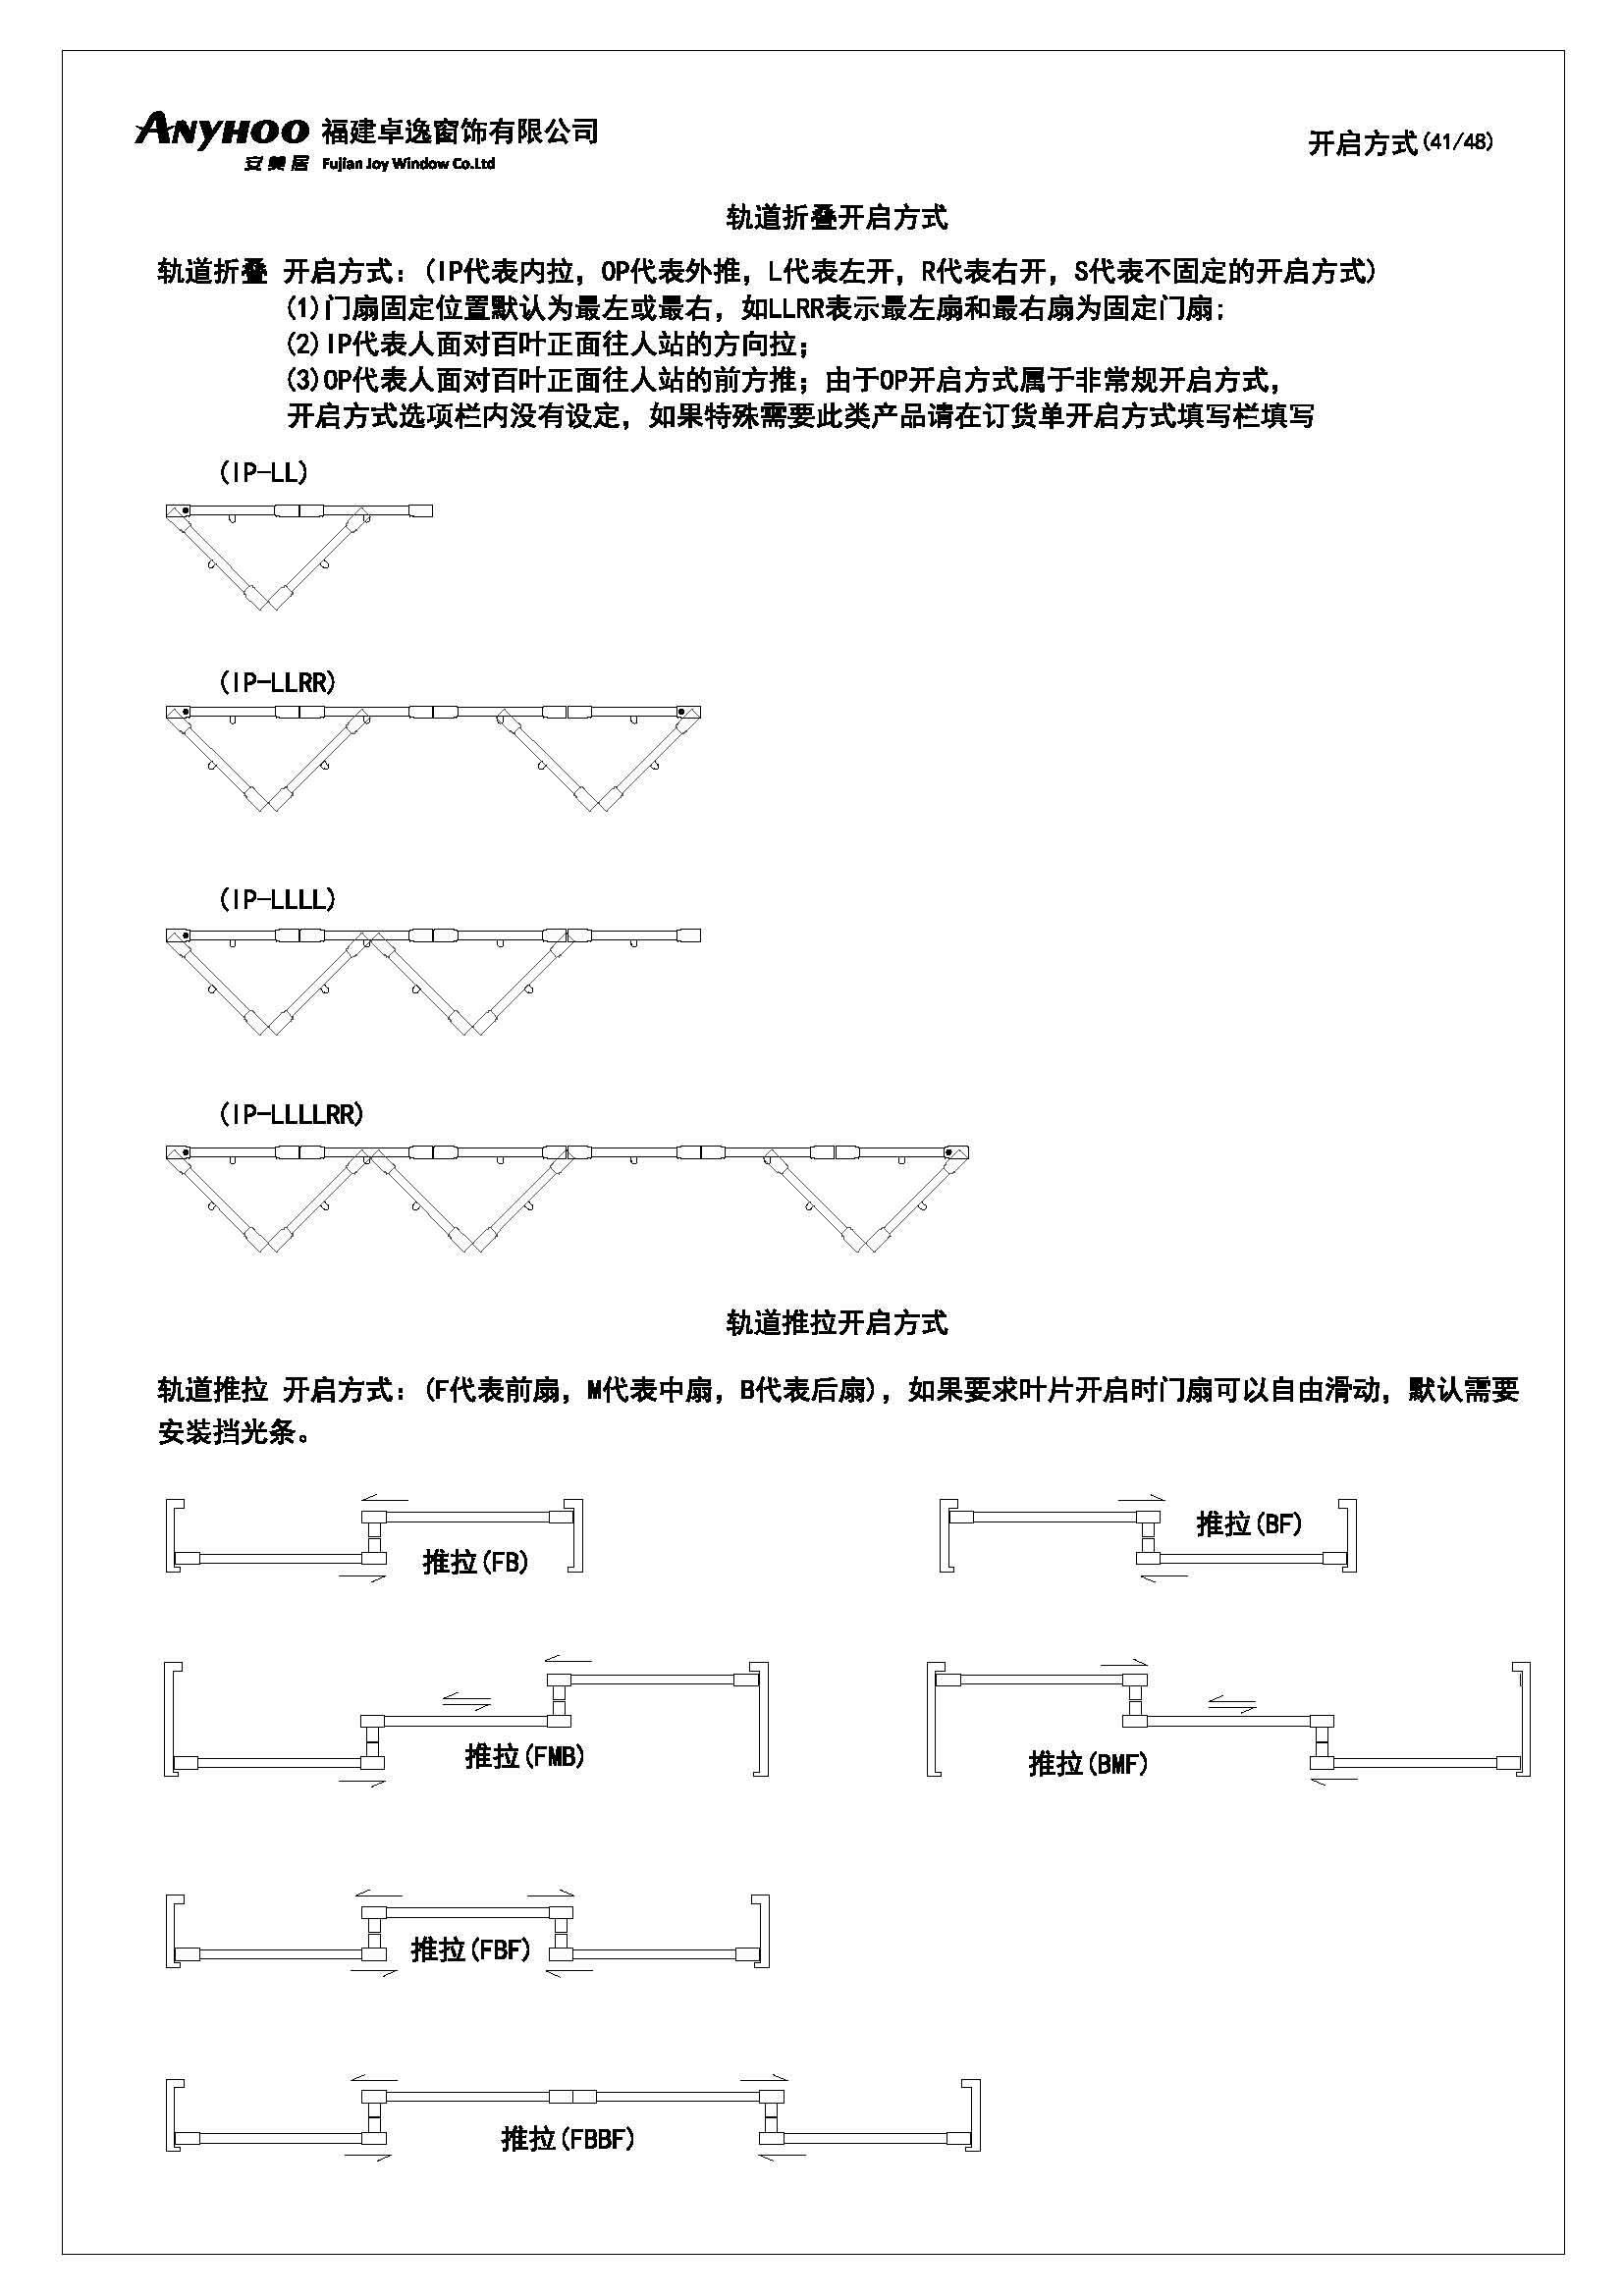 anyhoo技术手册中文版20190711(1)_页面_41.jpg